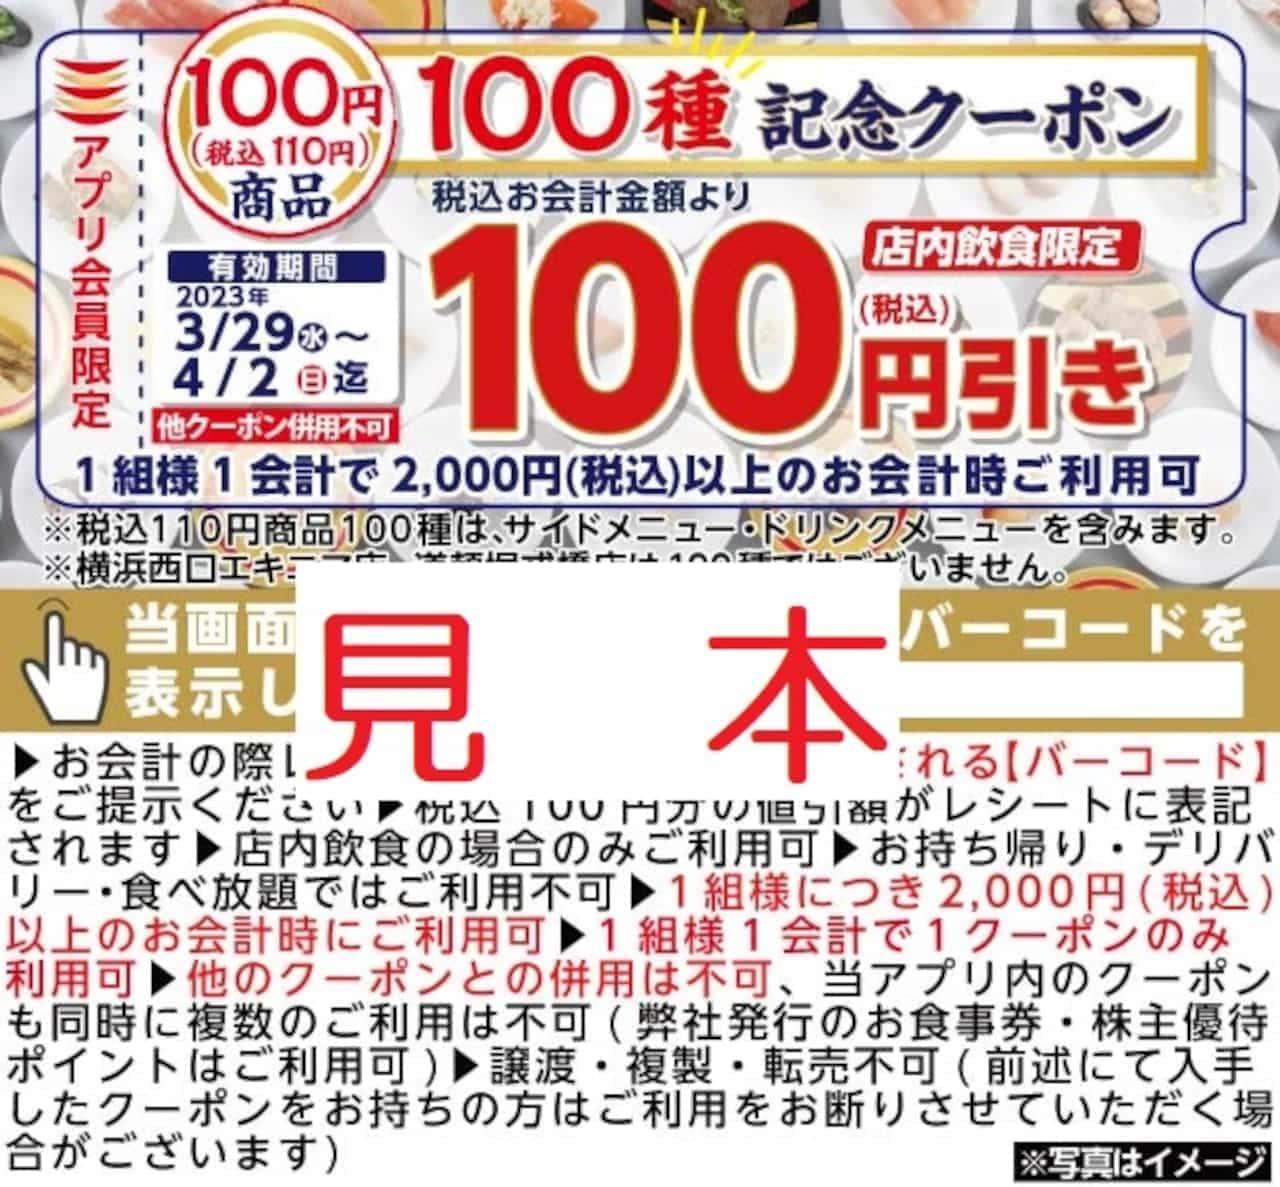 かっぱ寿司「店内飲食限定 会計2,000円以上で100円引きキャンペーン」